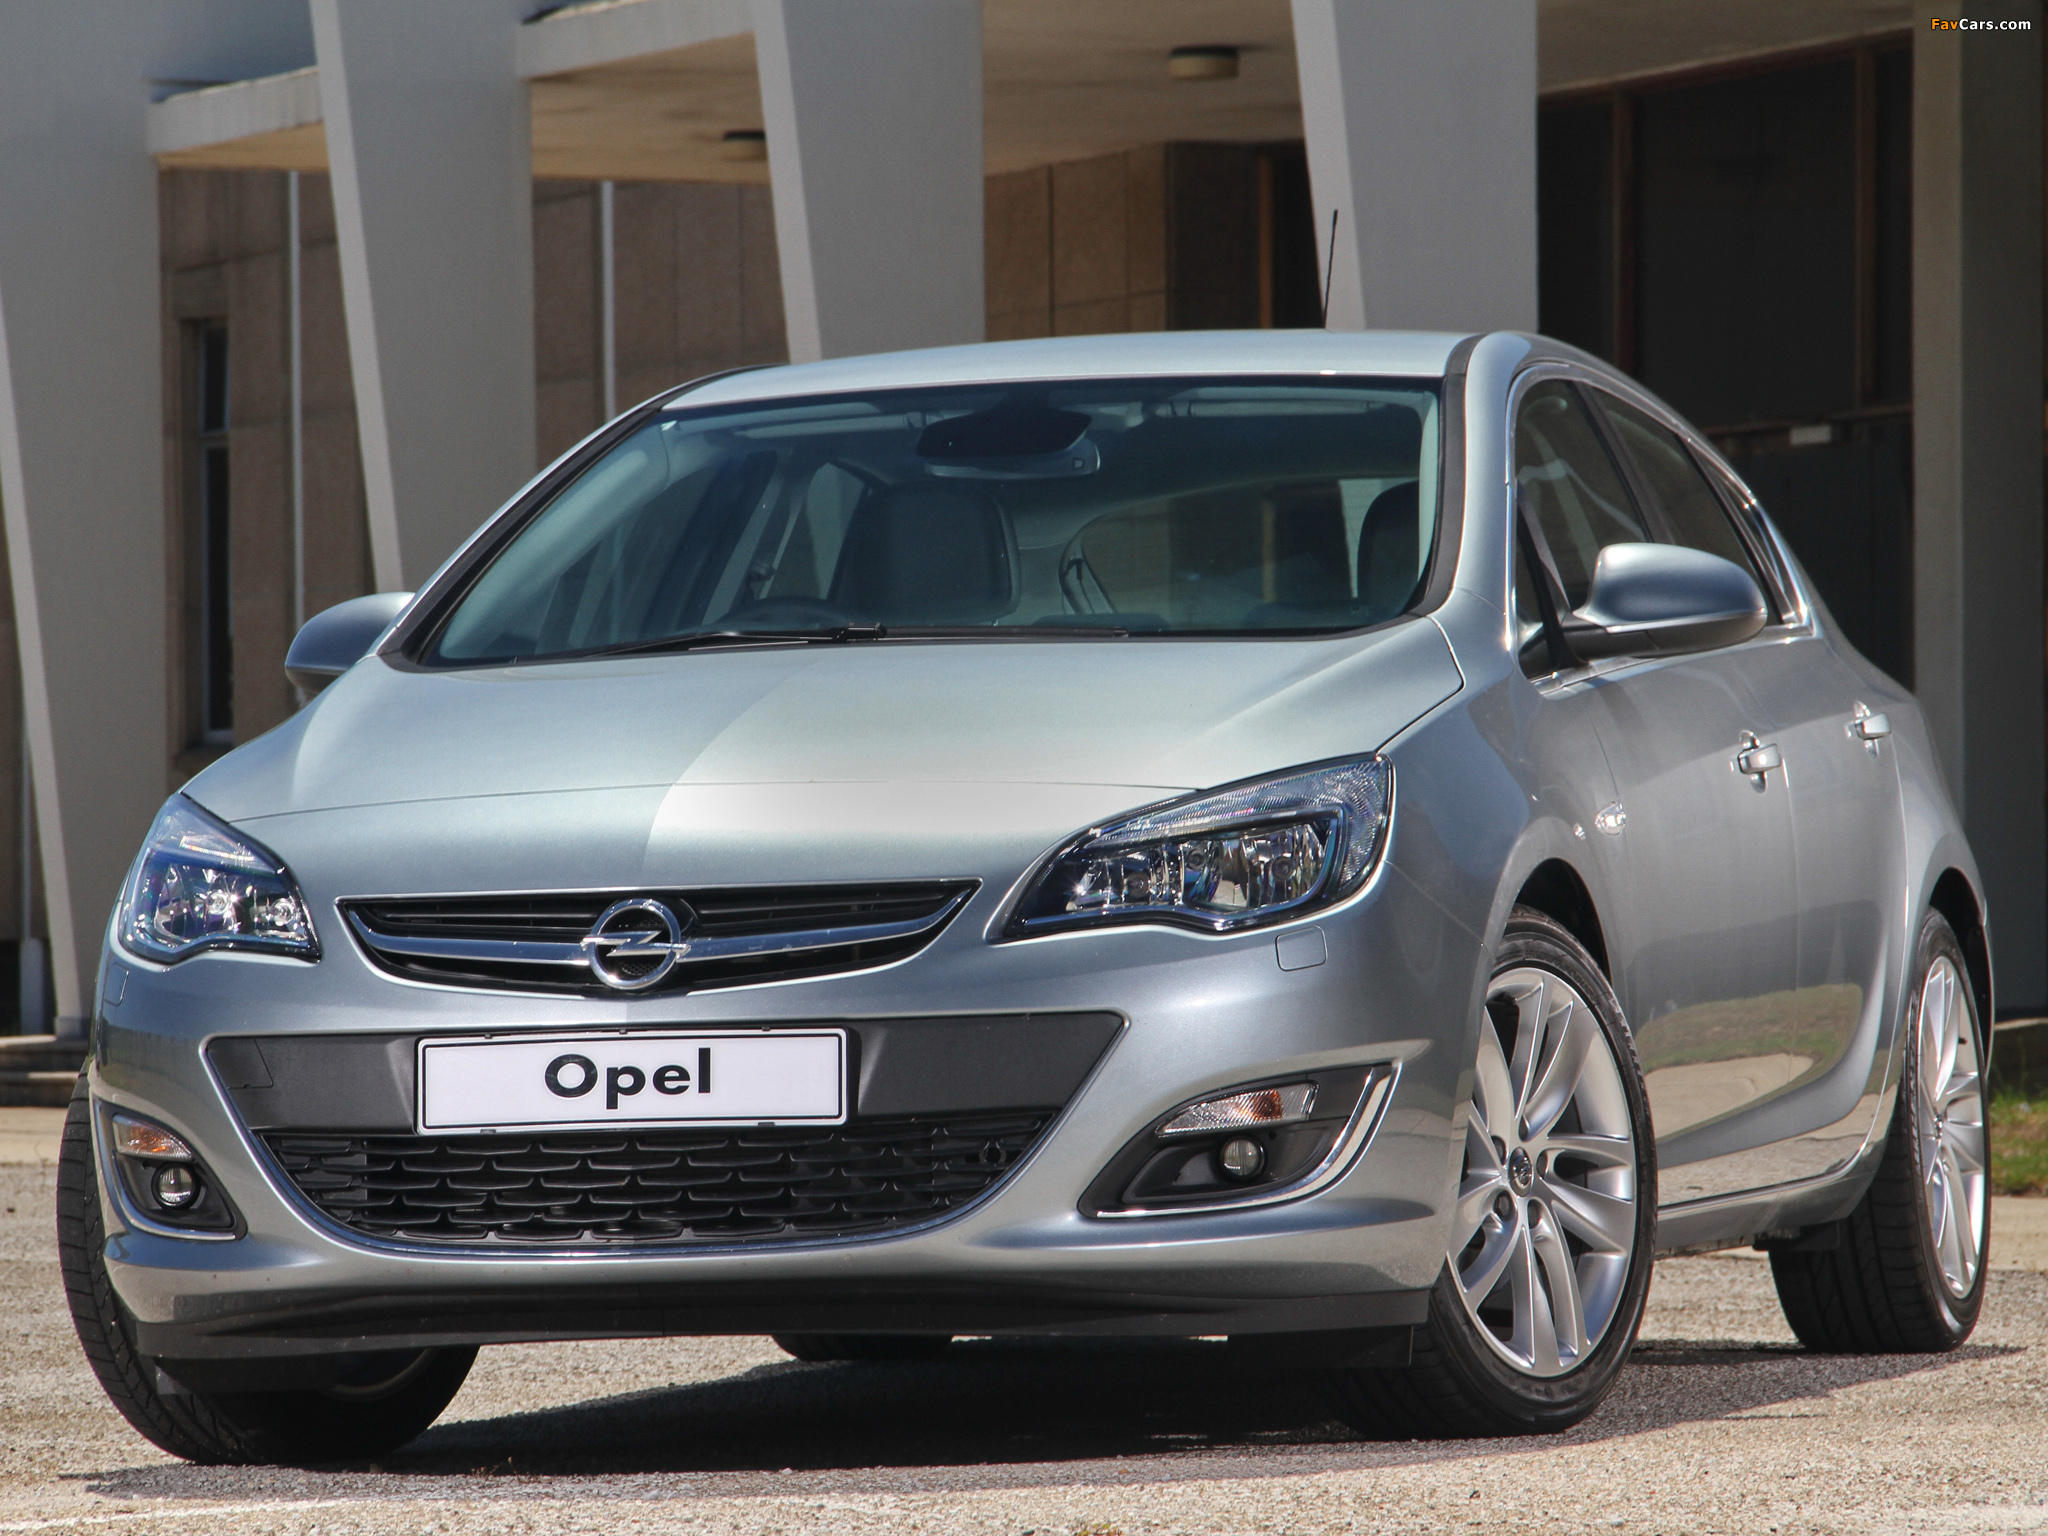 Opel t. Opel Astra j. Opel Astra j 2013. Opel Astra 2013.